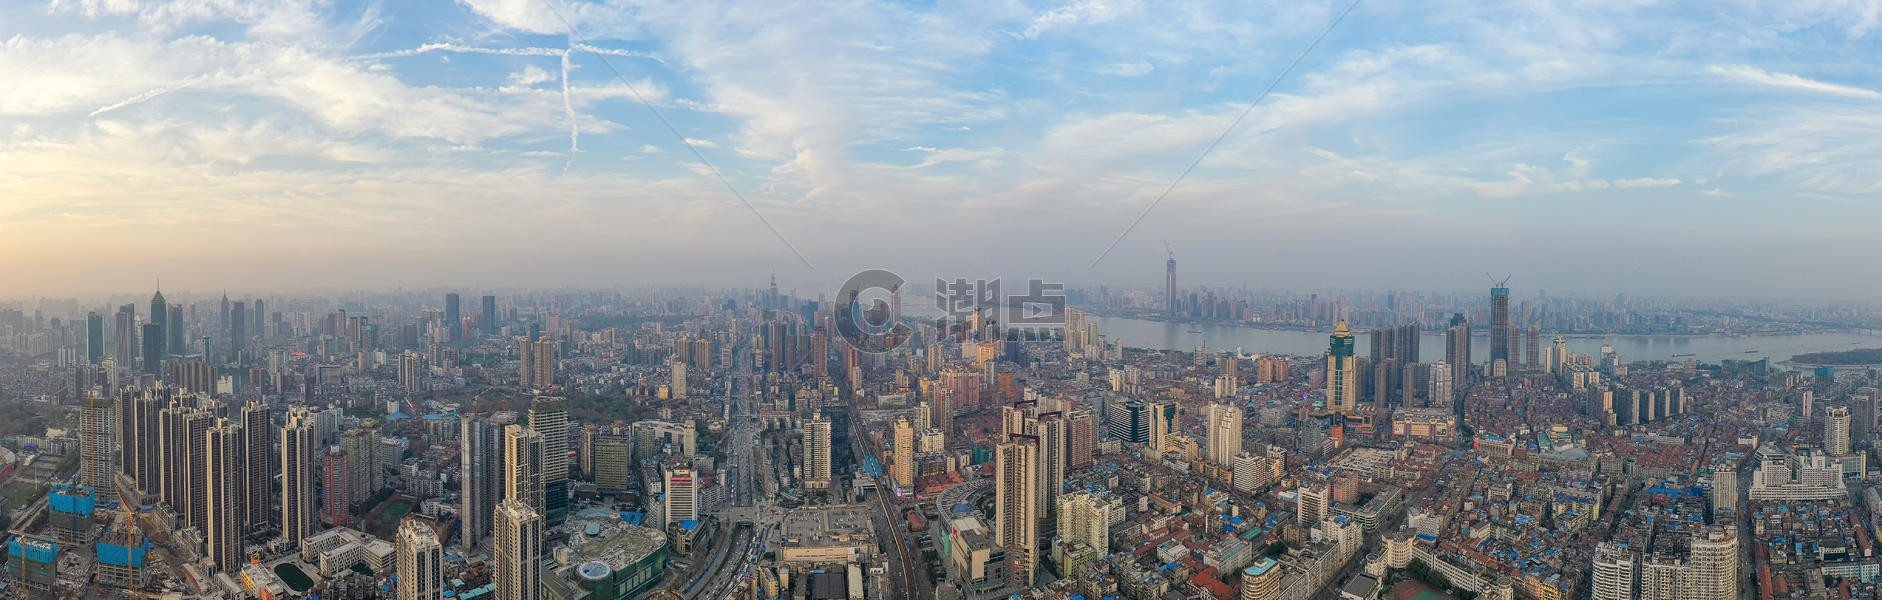 都市高楼大厦全景长图图片素材免费下载